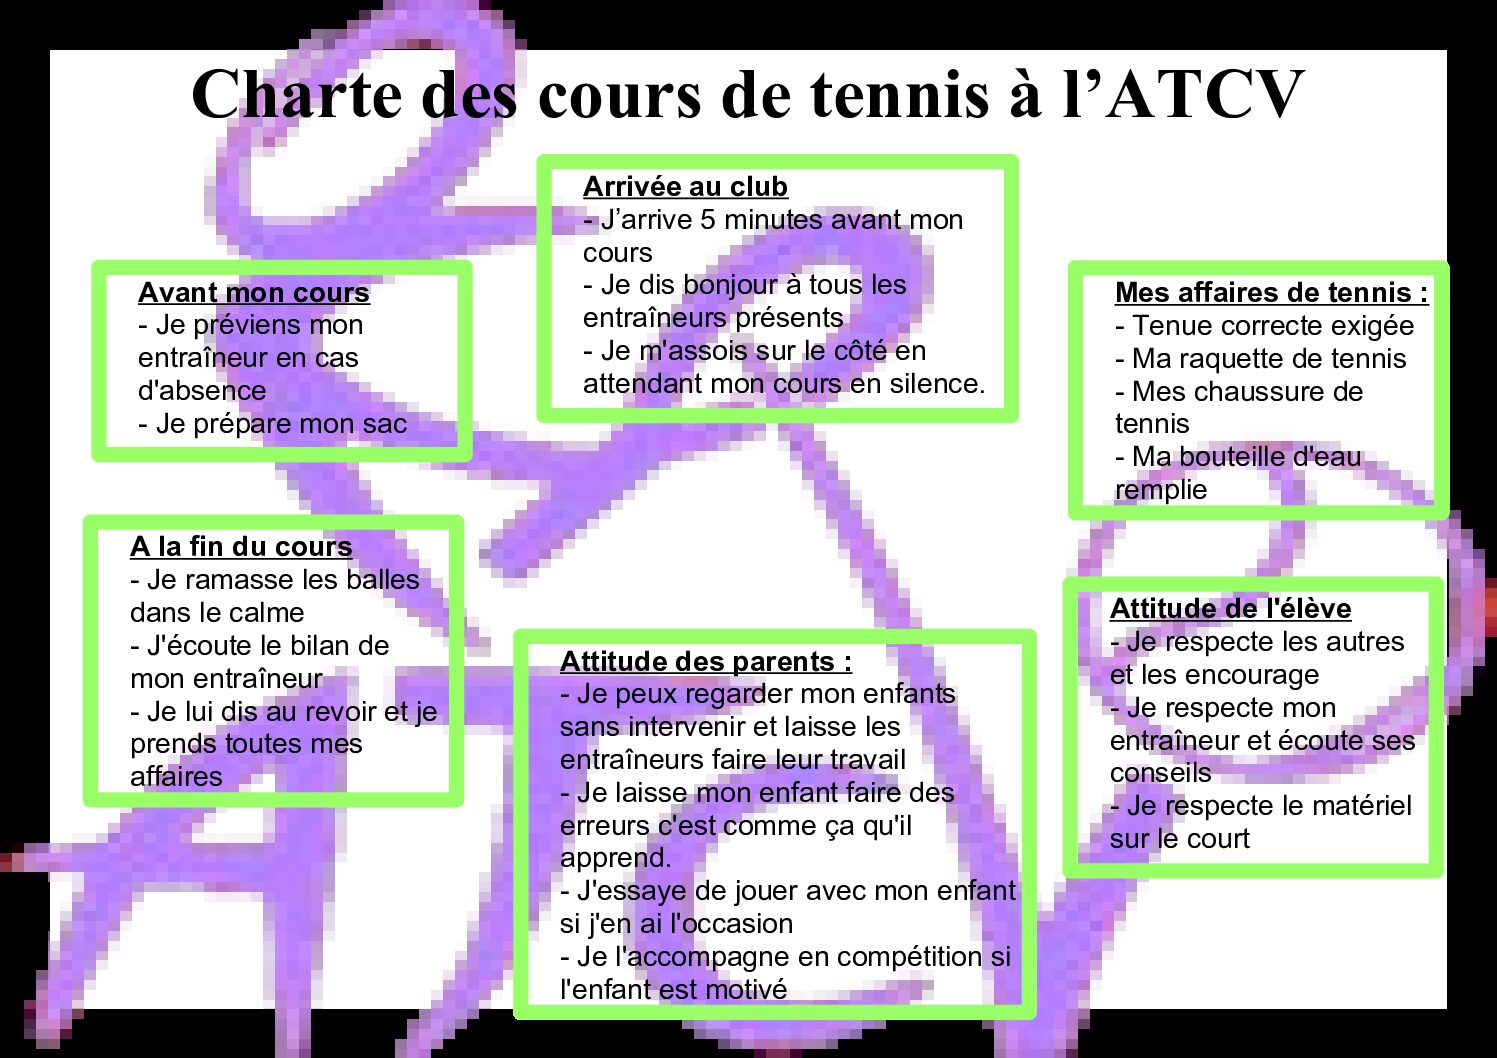 Charte des cours de tennis à l'ATCV